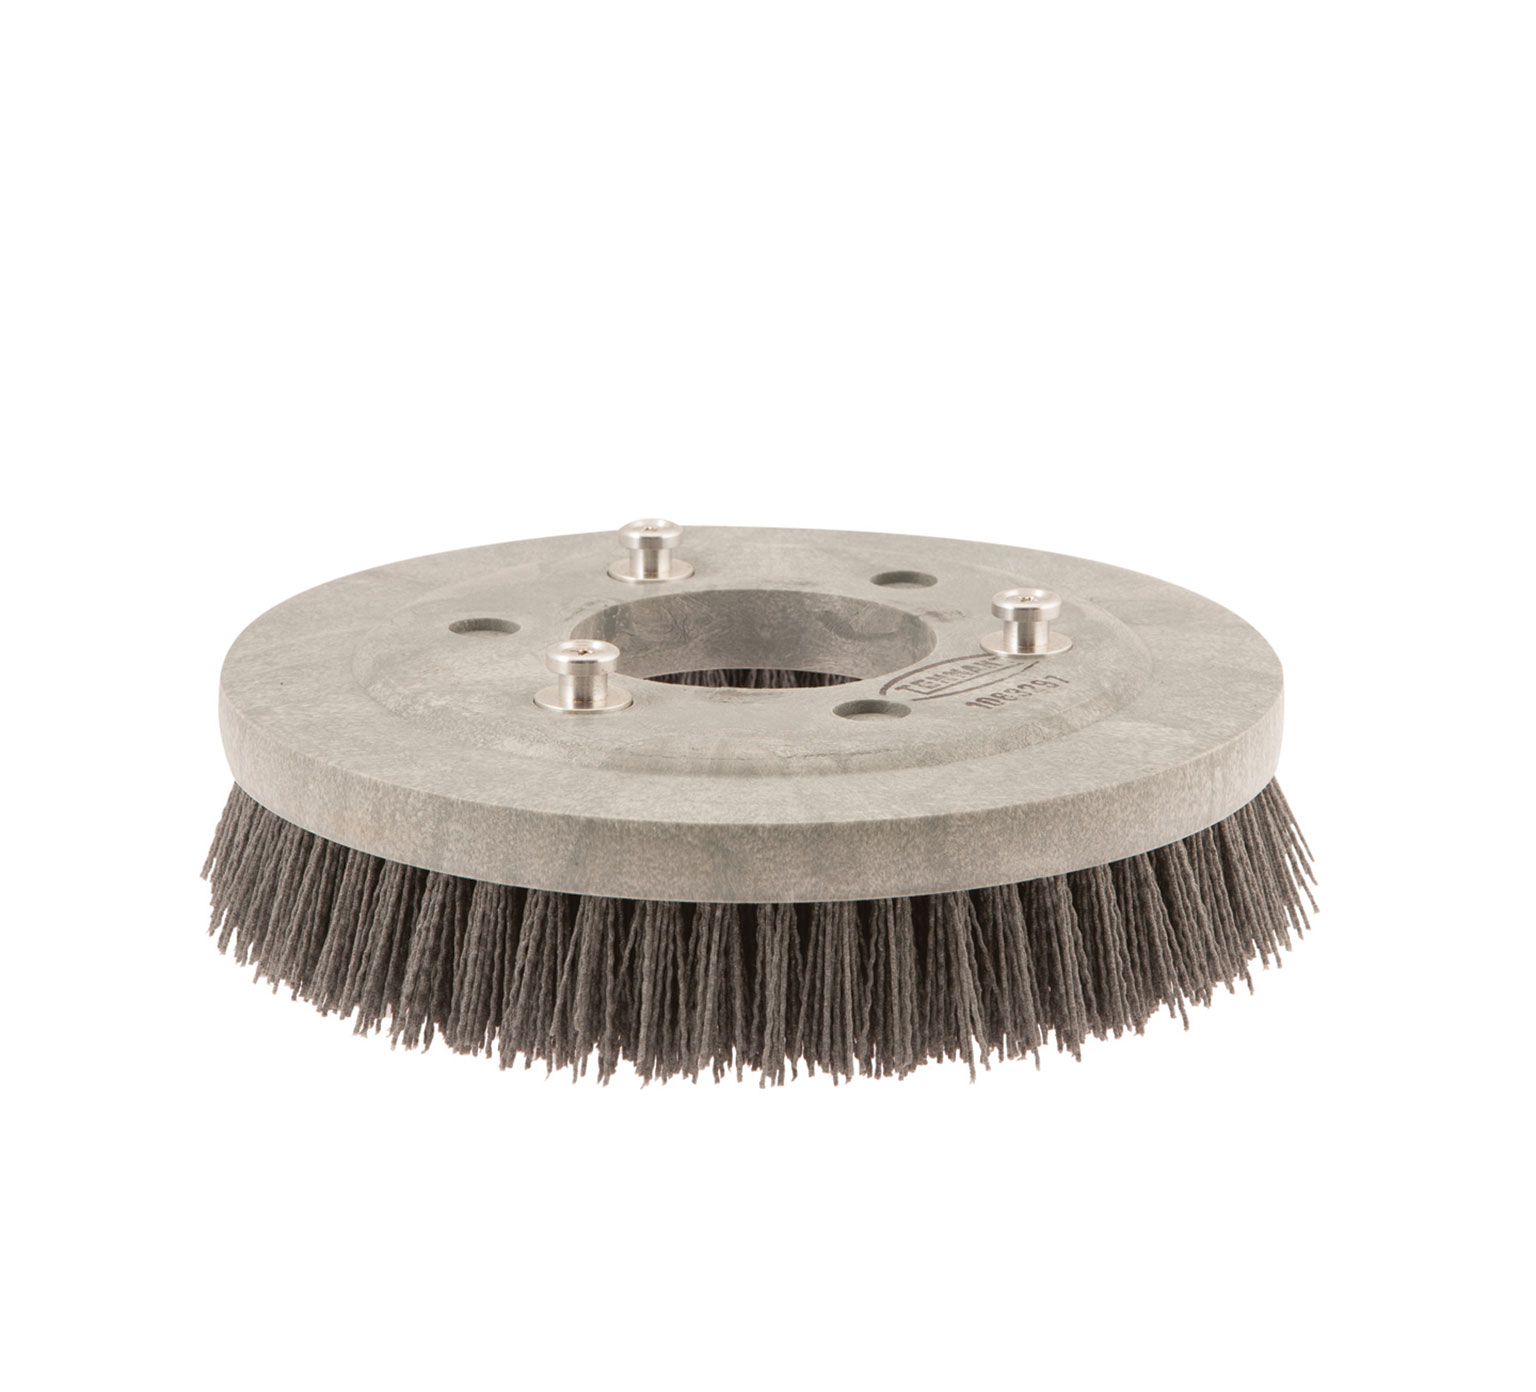 1063297 Abrasive Disk Scrub Brush &#8211; 12 in / 304.8 mm alt 1